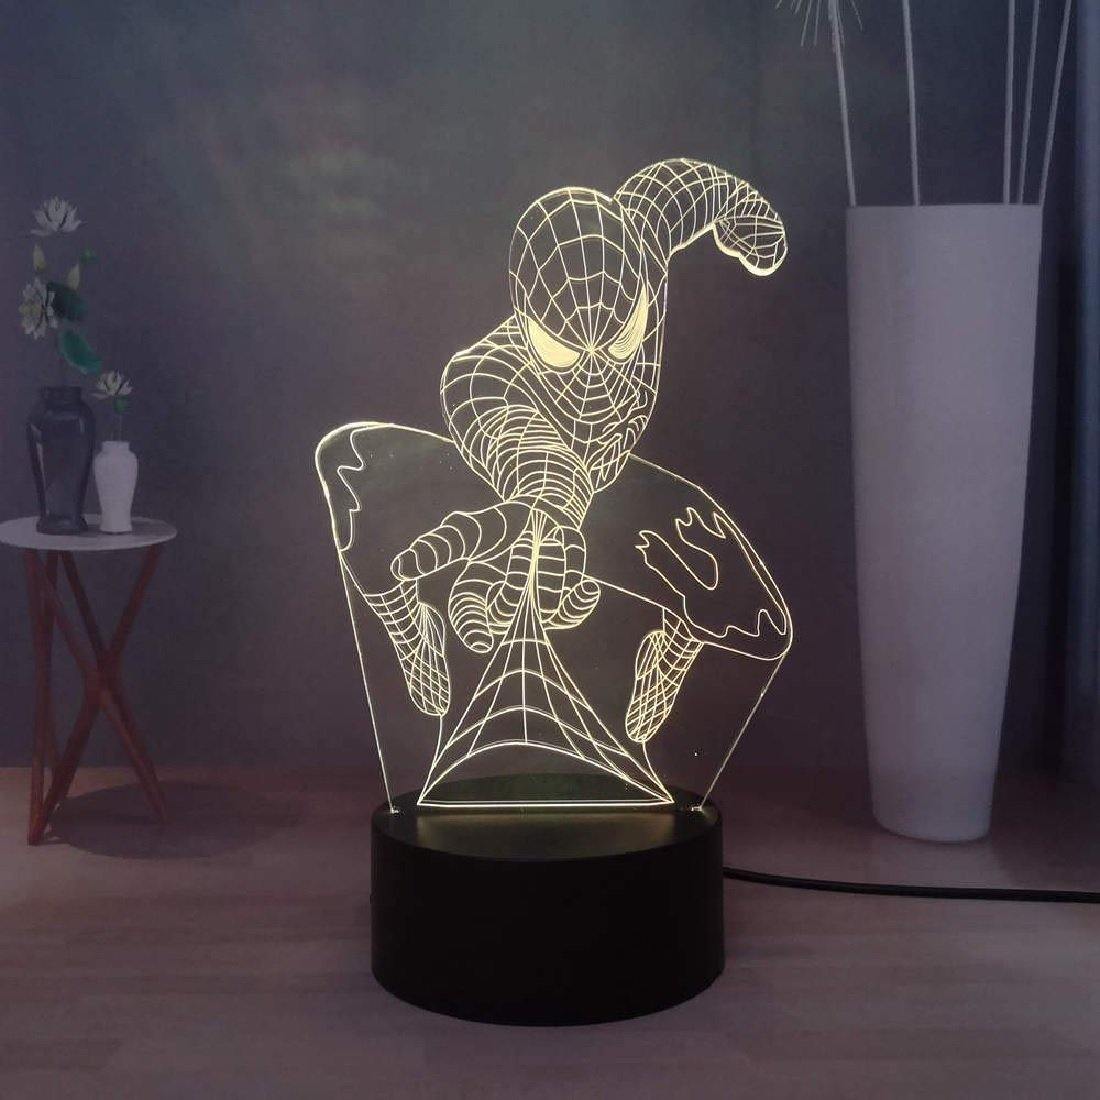 3D Illusion LED Spiderman Lamp 3D Illusion Led lamp- Royalkart - The Urban Store